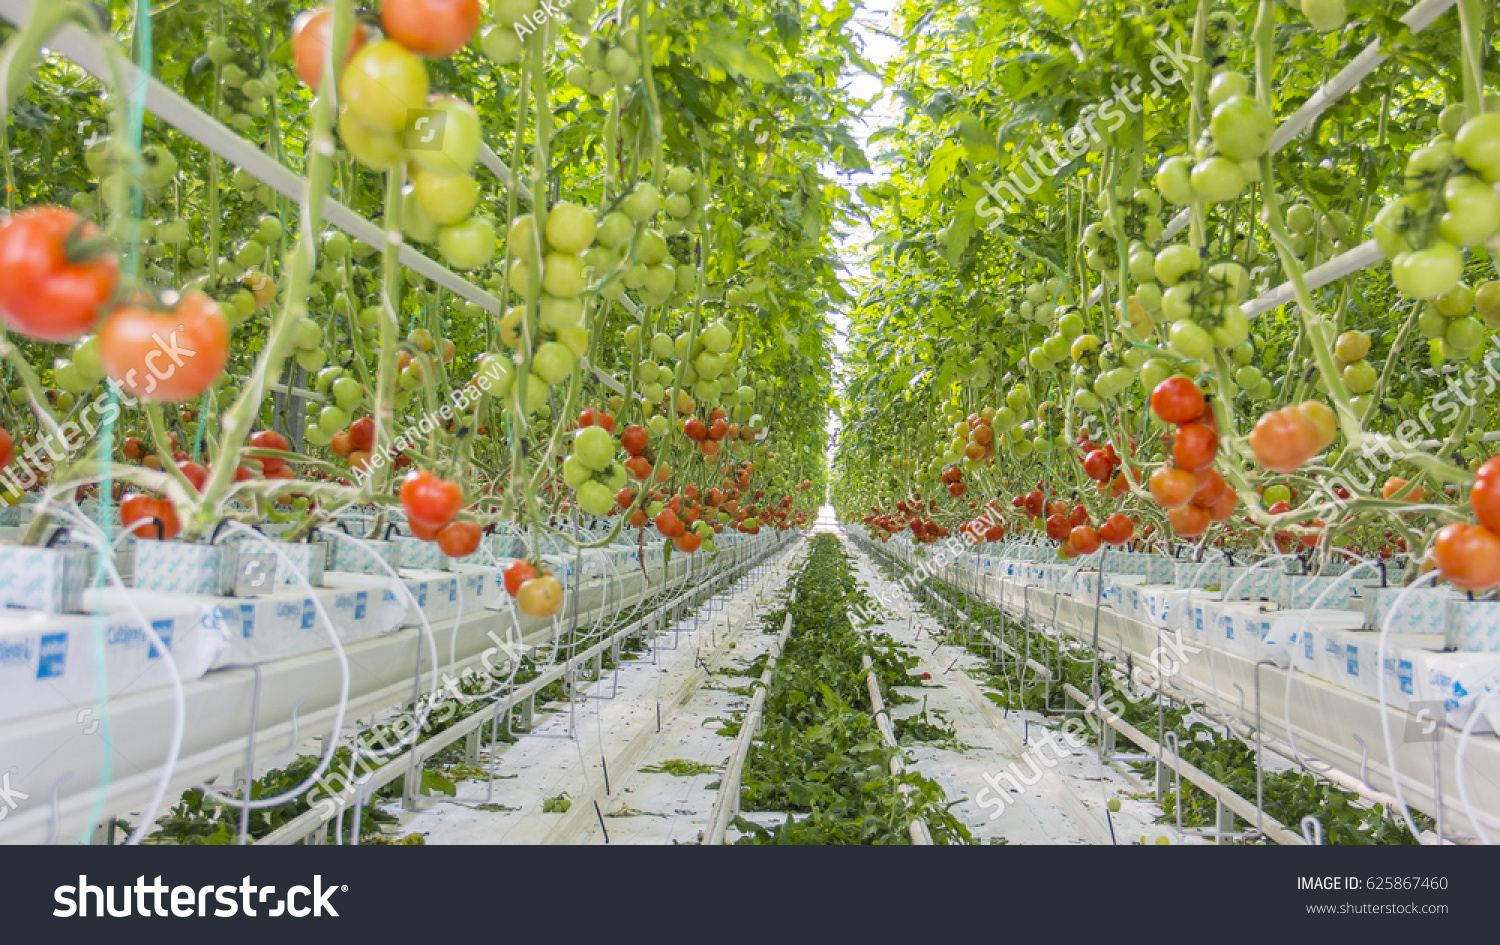 Способы выращивания помидоров. Томаты черри гидропоника. Томат Мерлис в промышленной теплице. Голландия гидропонные томаты. Помидоры на гидропонике в теплице.